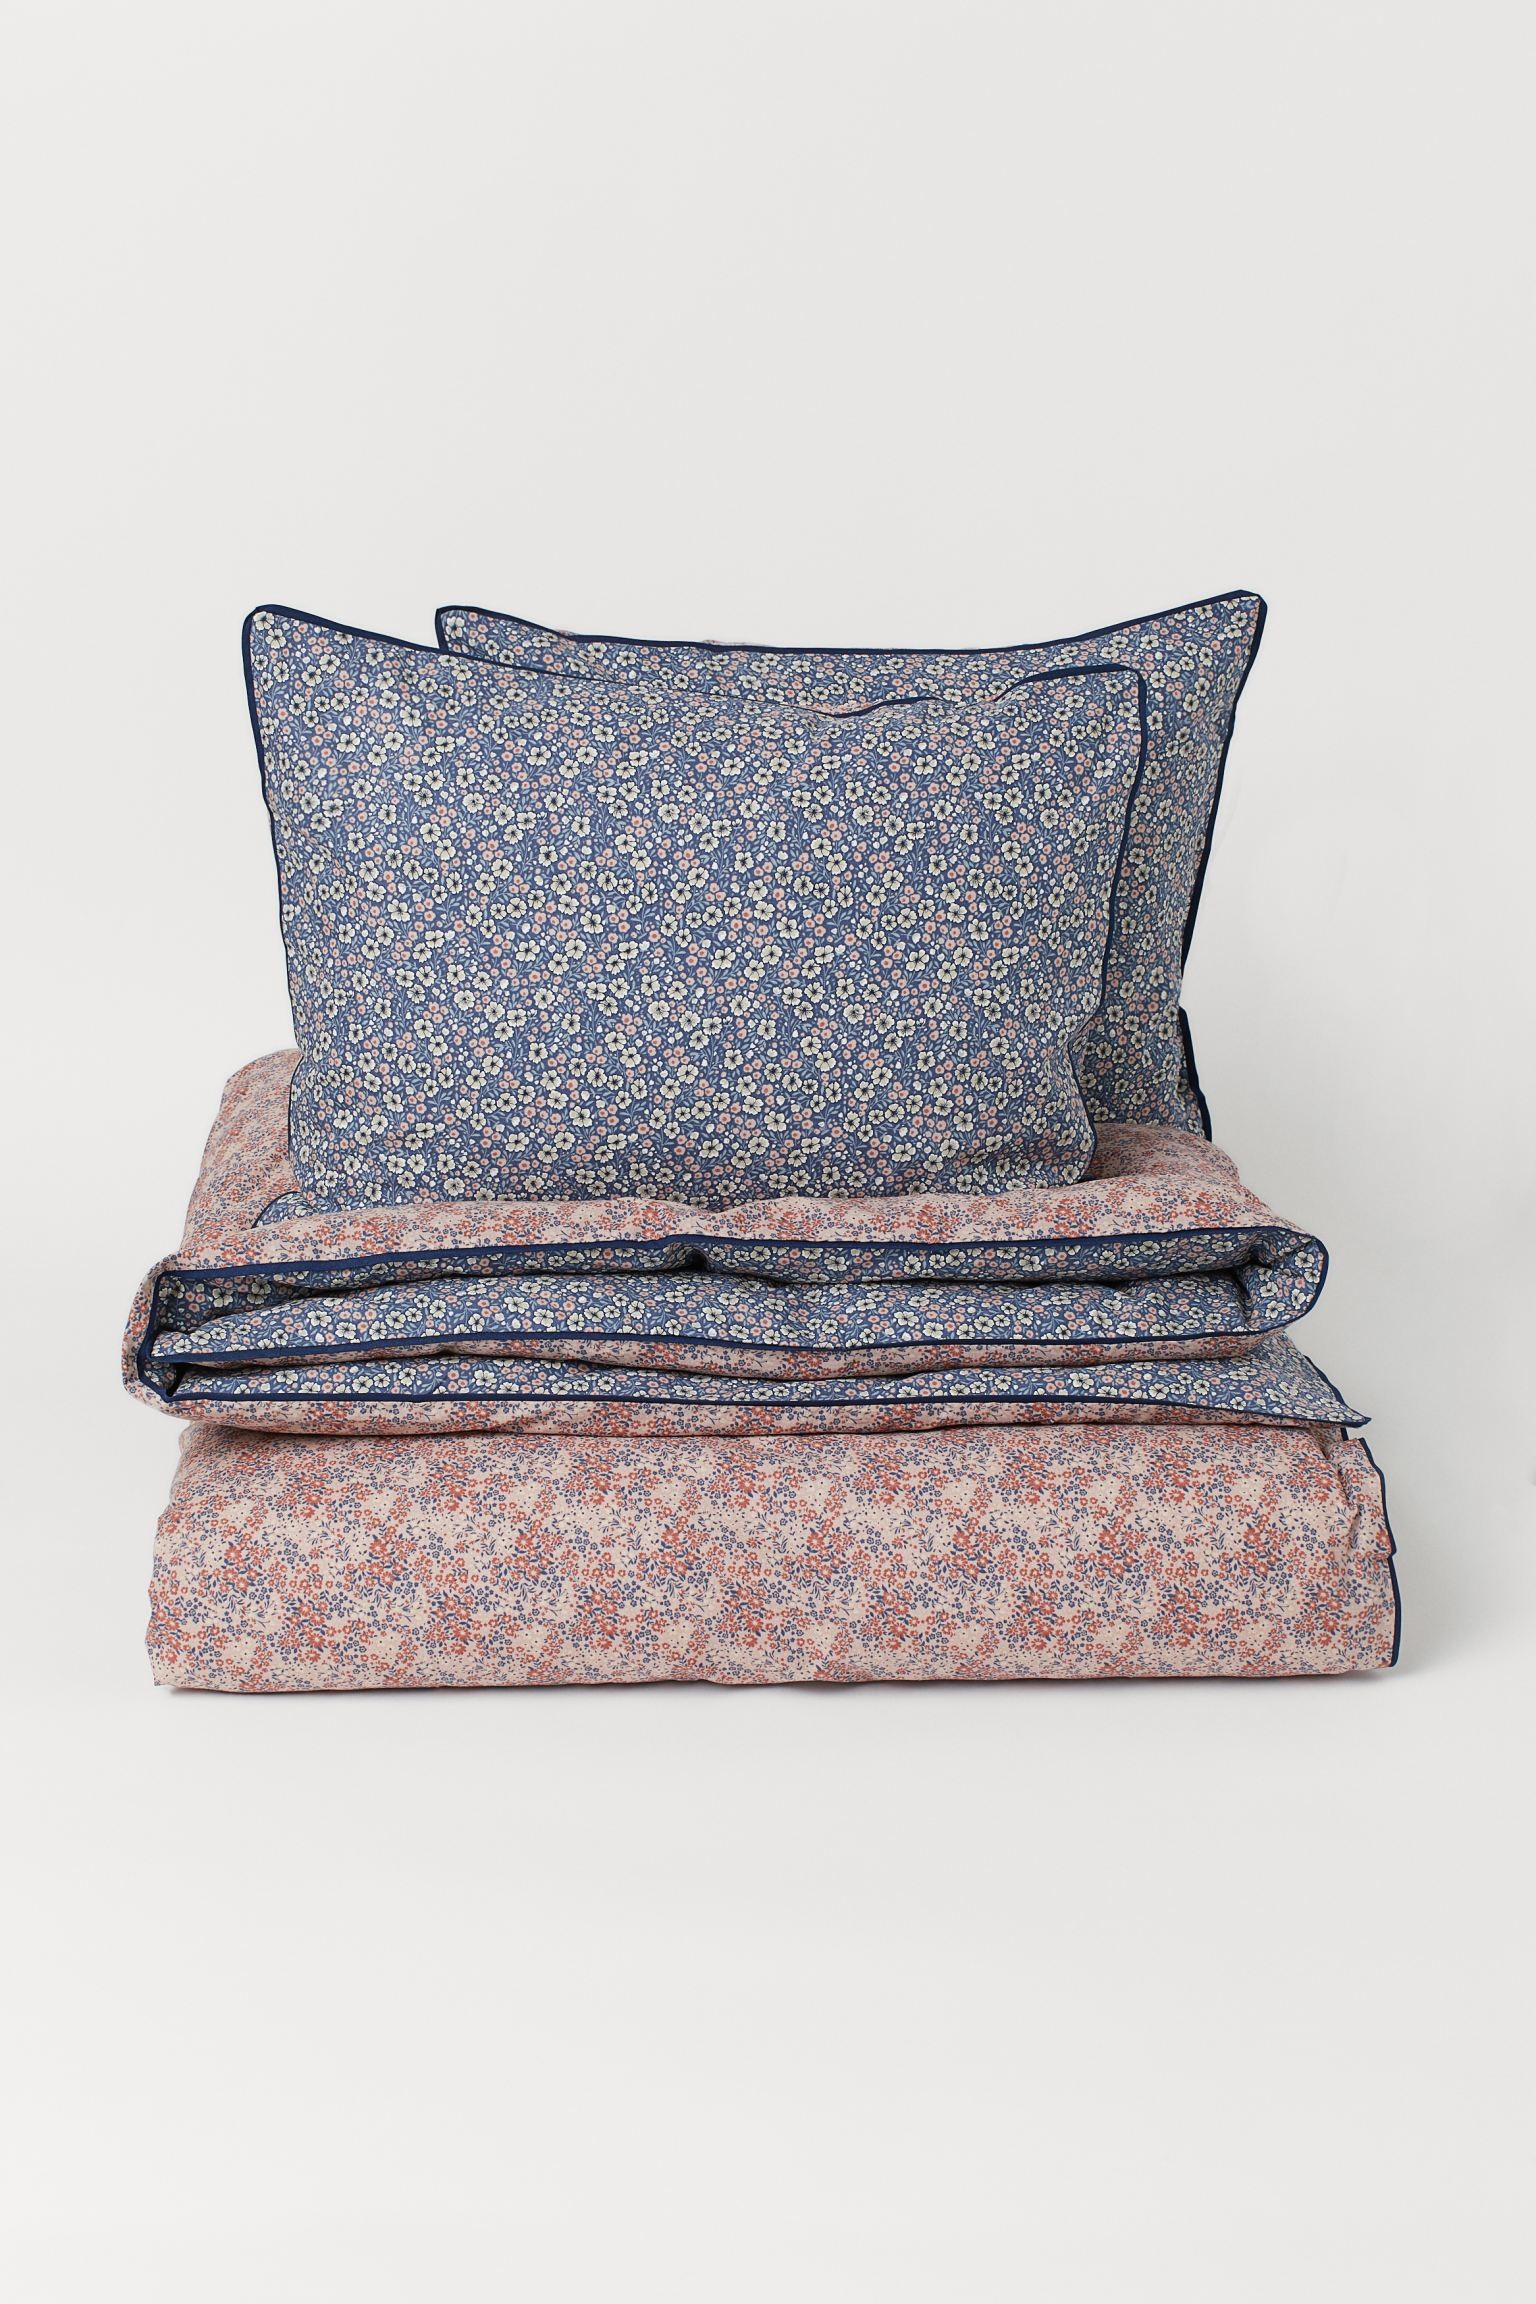 Двуспальное постельное белье из хлопка, Голубино-голубой/Маленькие цветы, Разные размеры